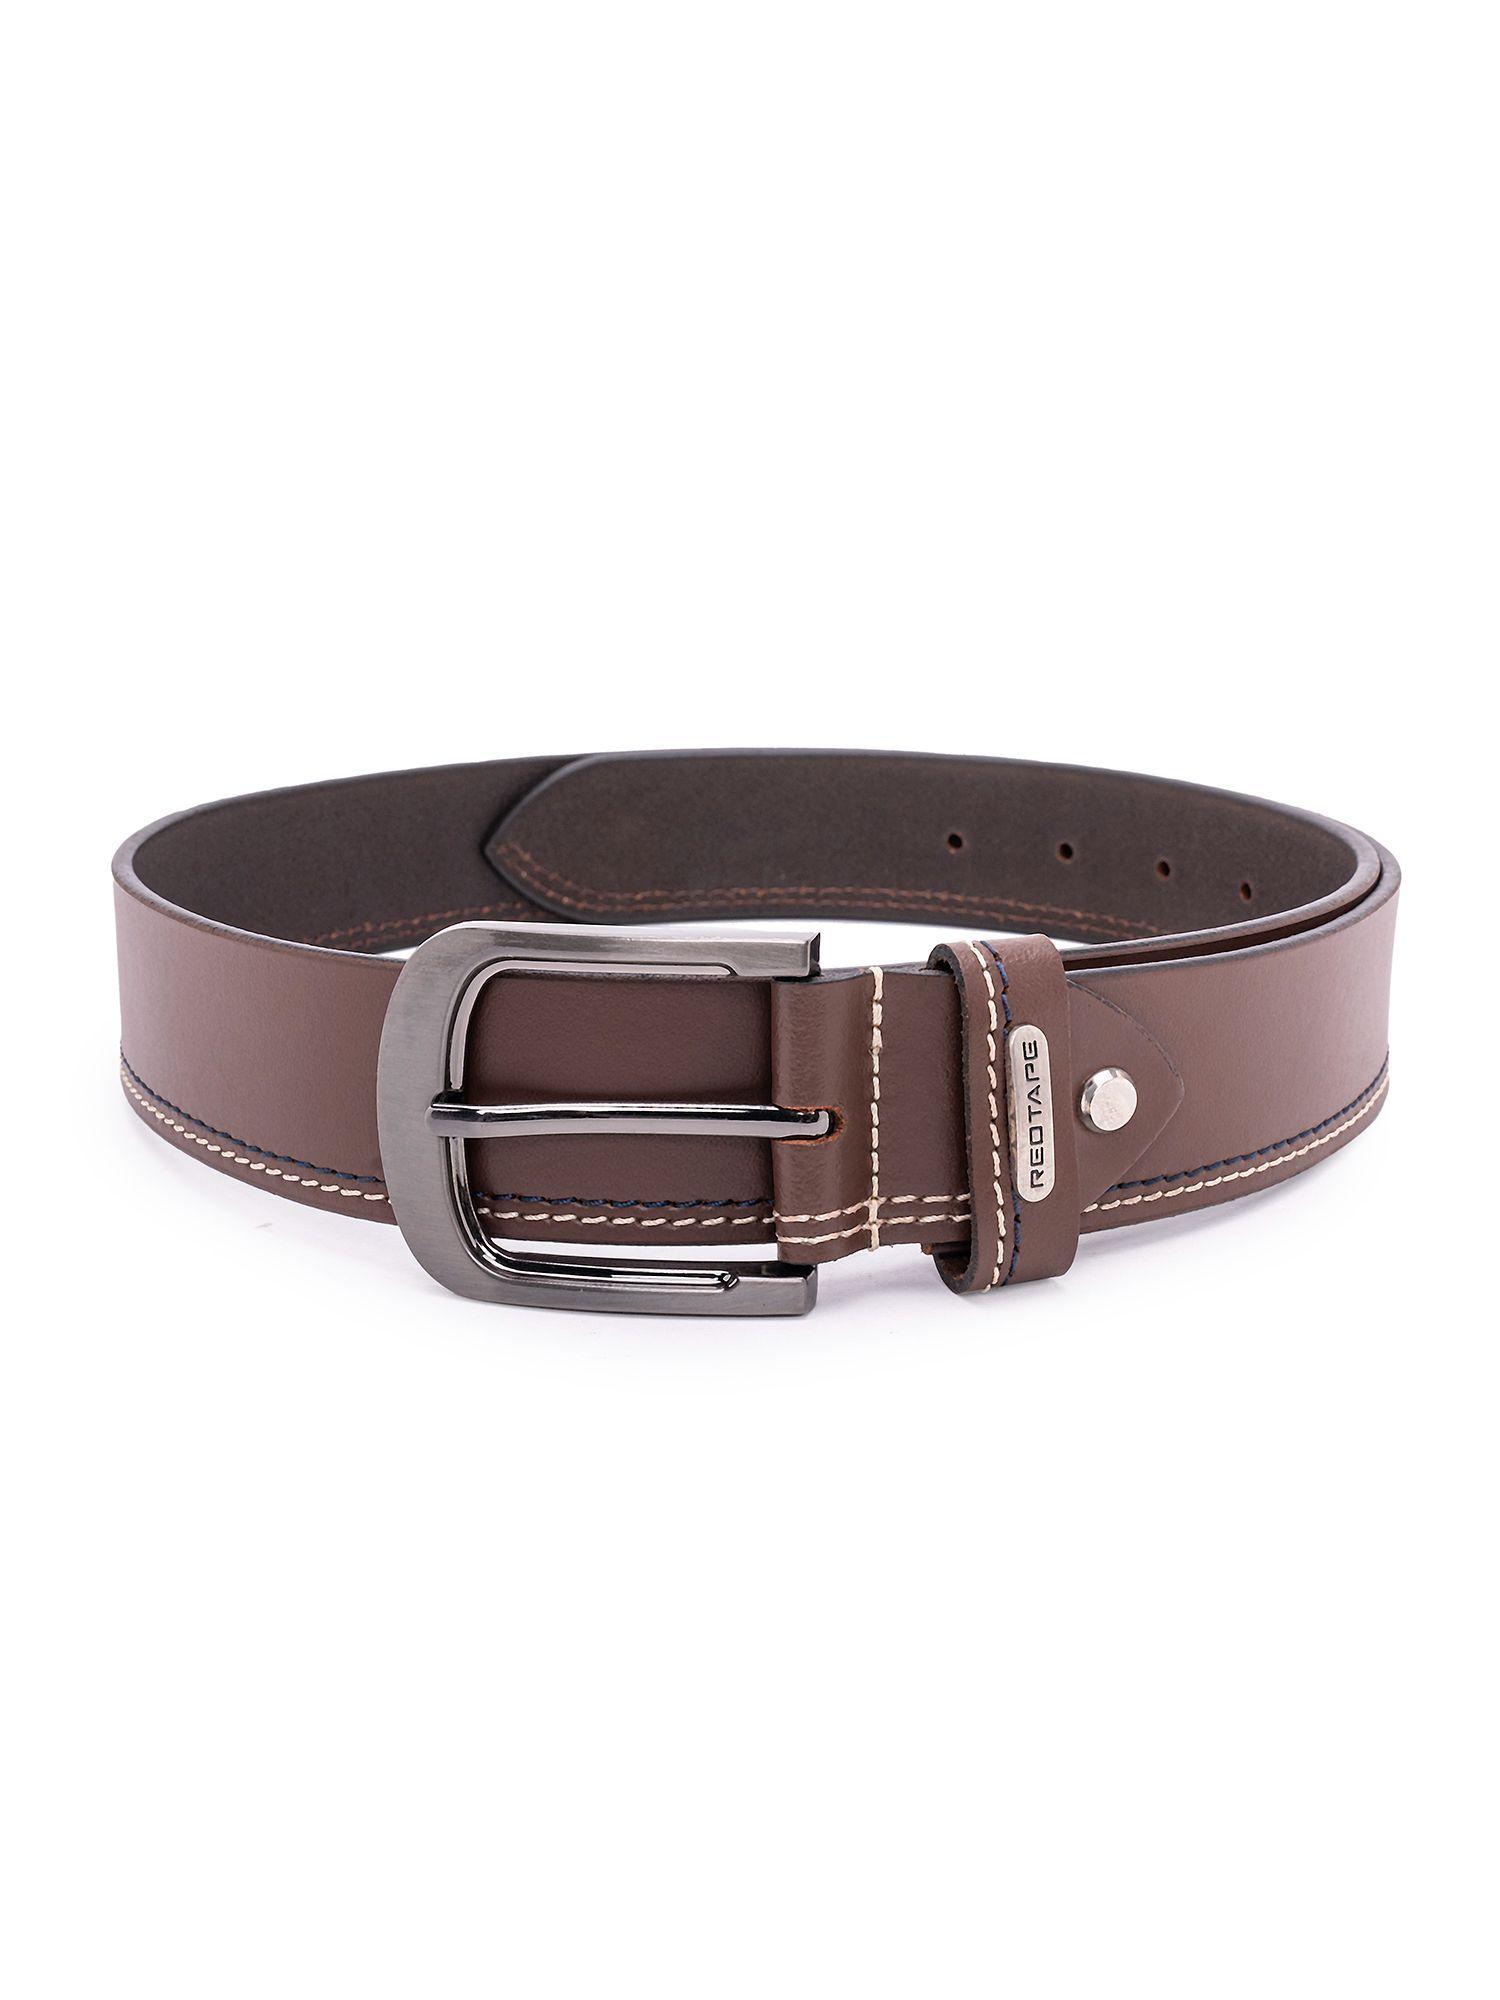 mens-brown-leather-formal-belt